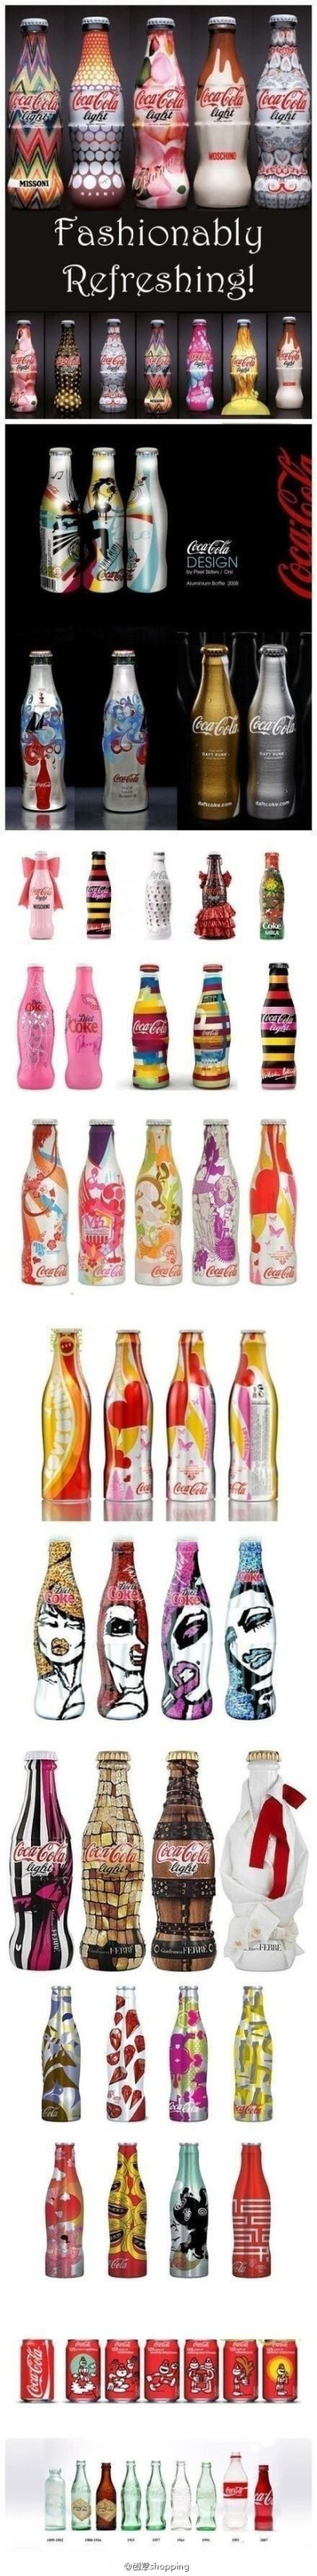 可口可乐的各种创意包装